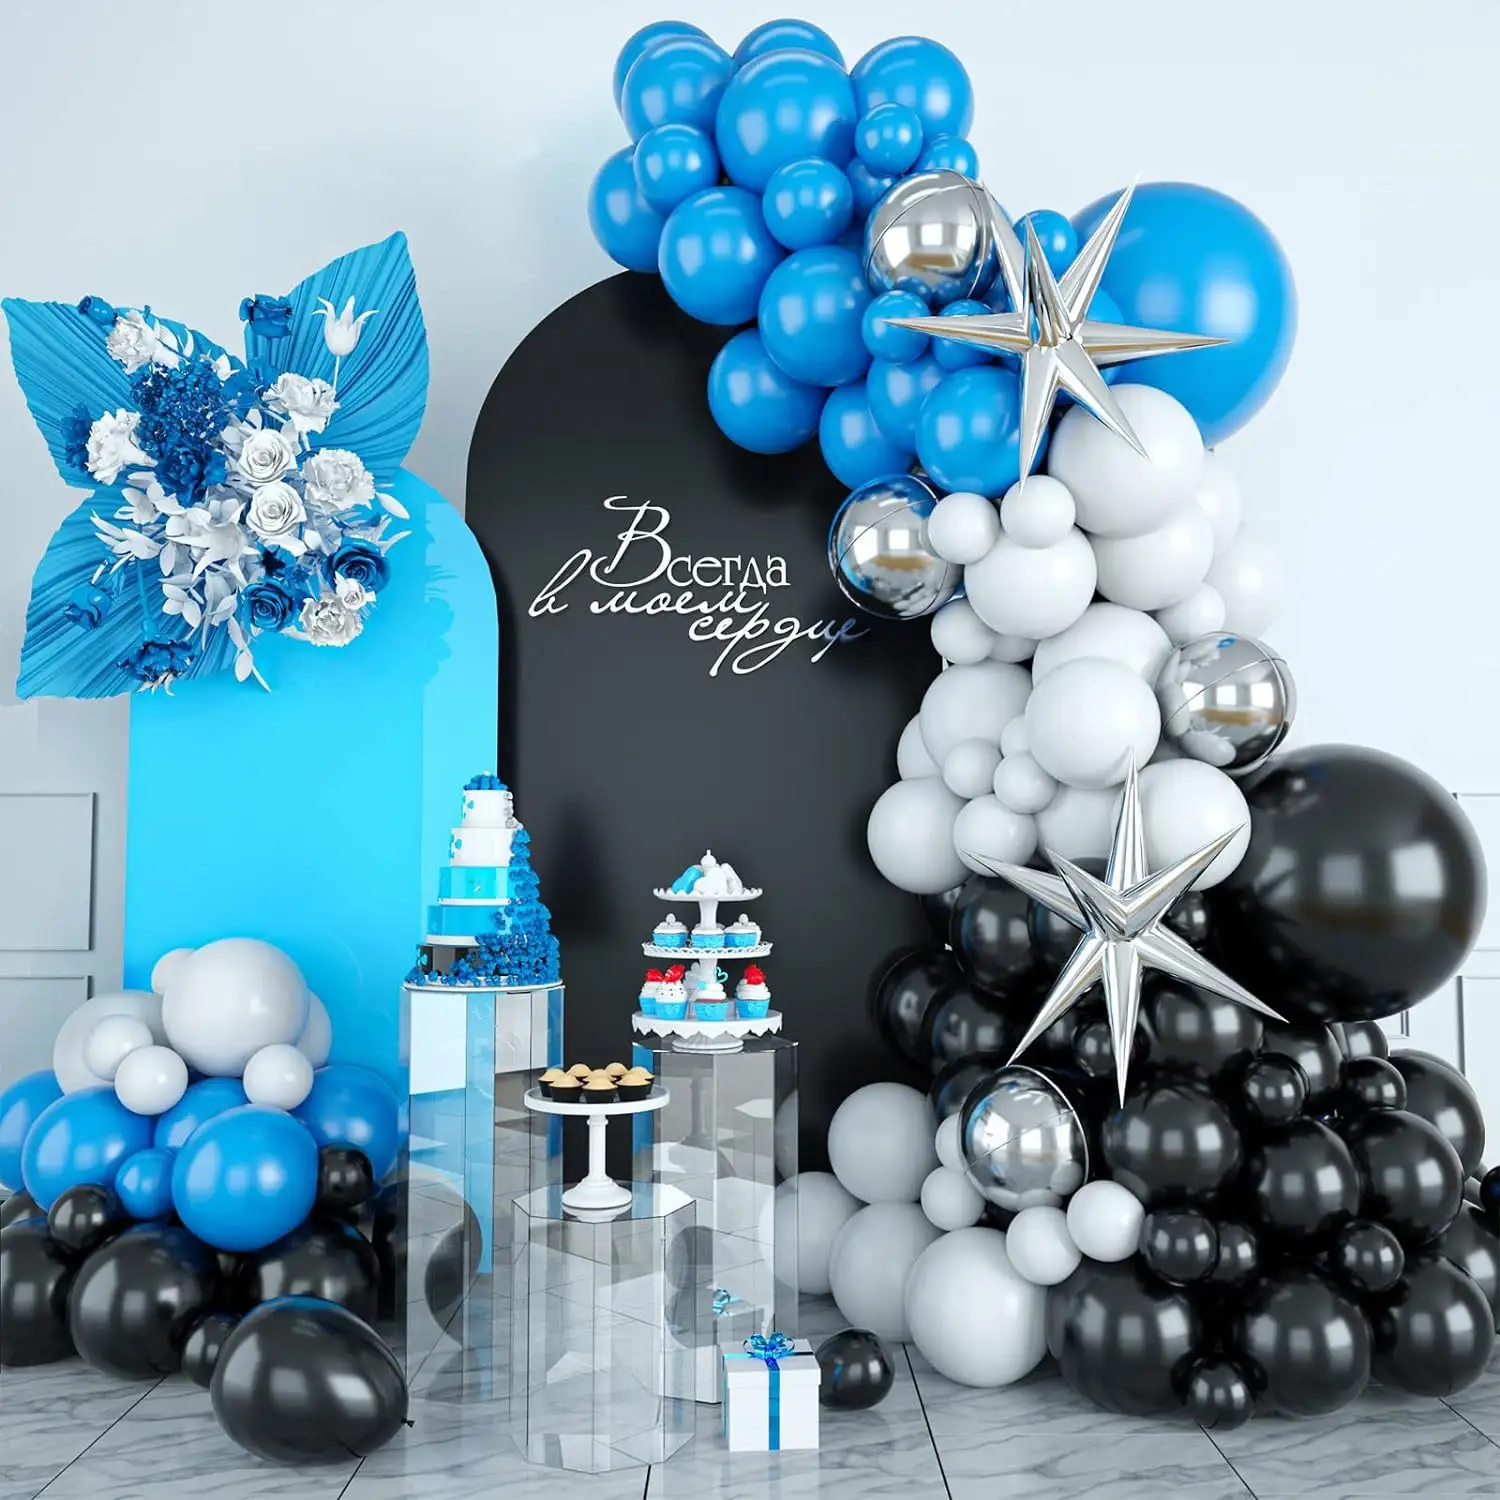 Conjunto de balões para decoração de festas de aniversário de meninos, roupa preta e azul, estrela de prata e explosão, internacional